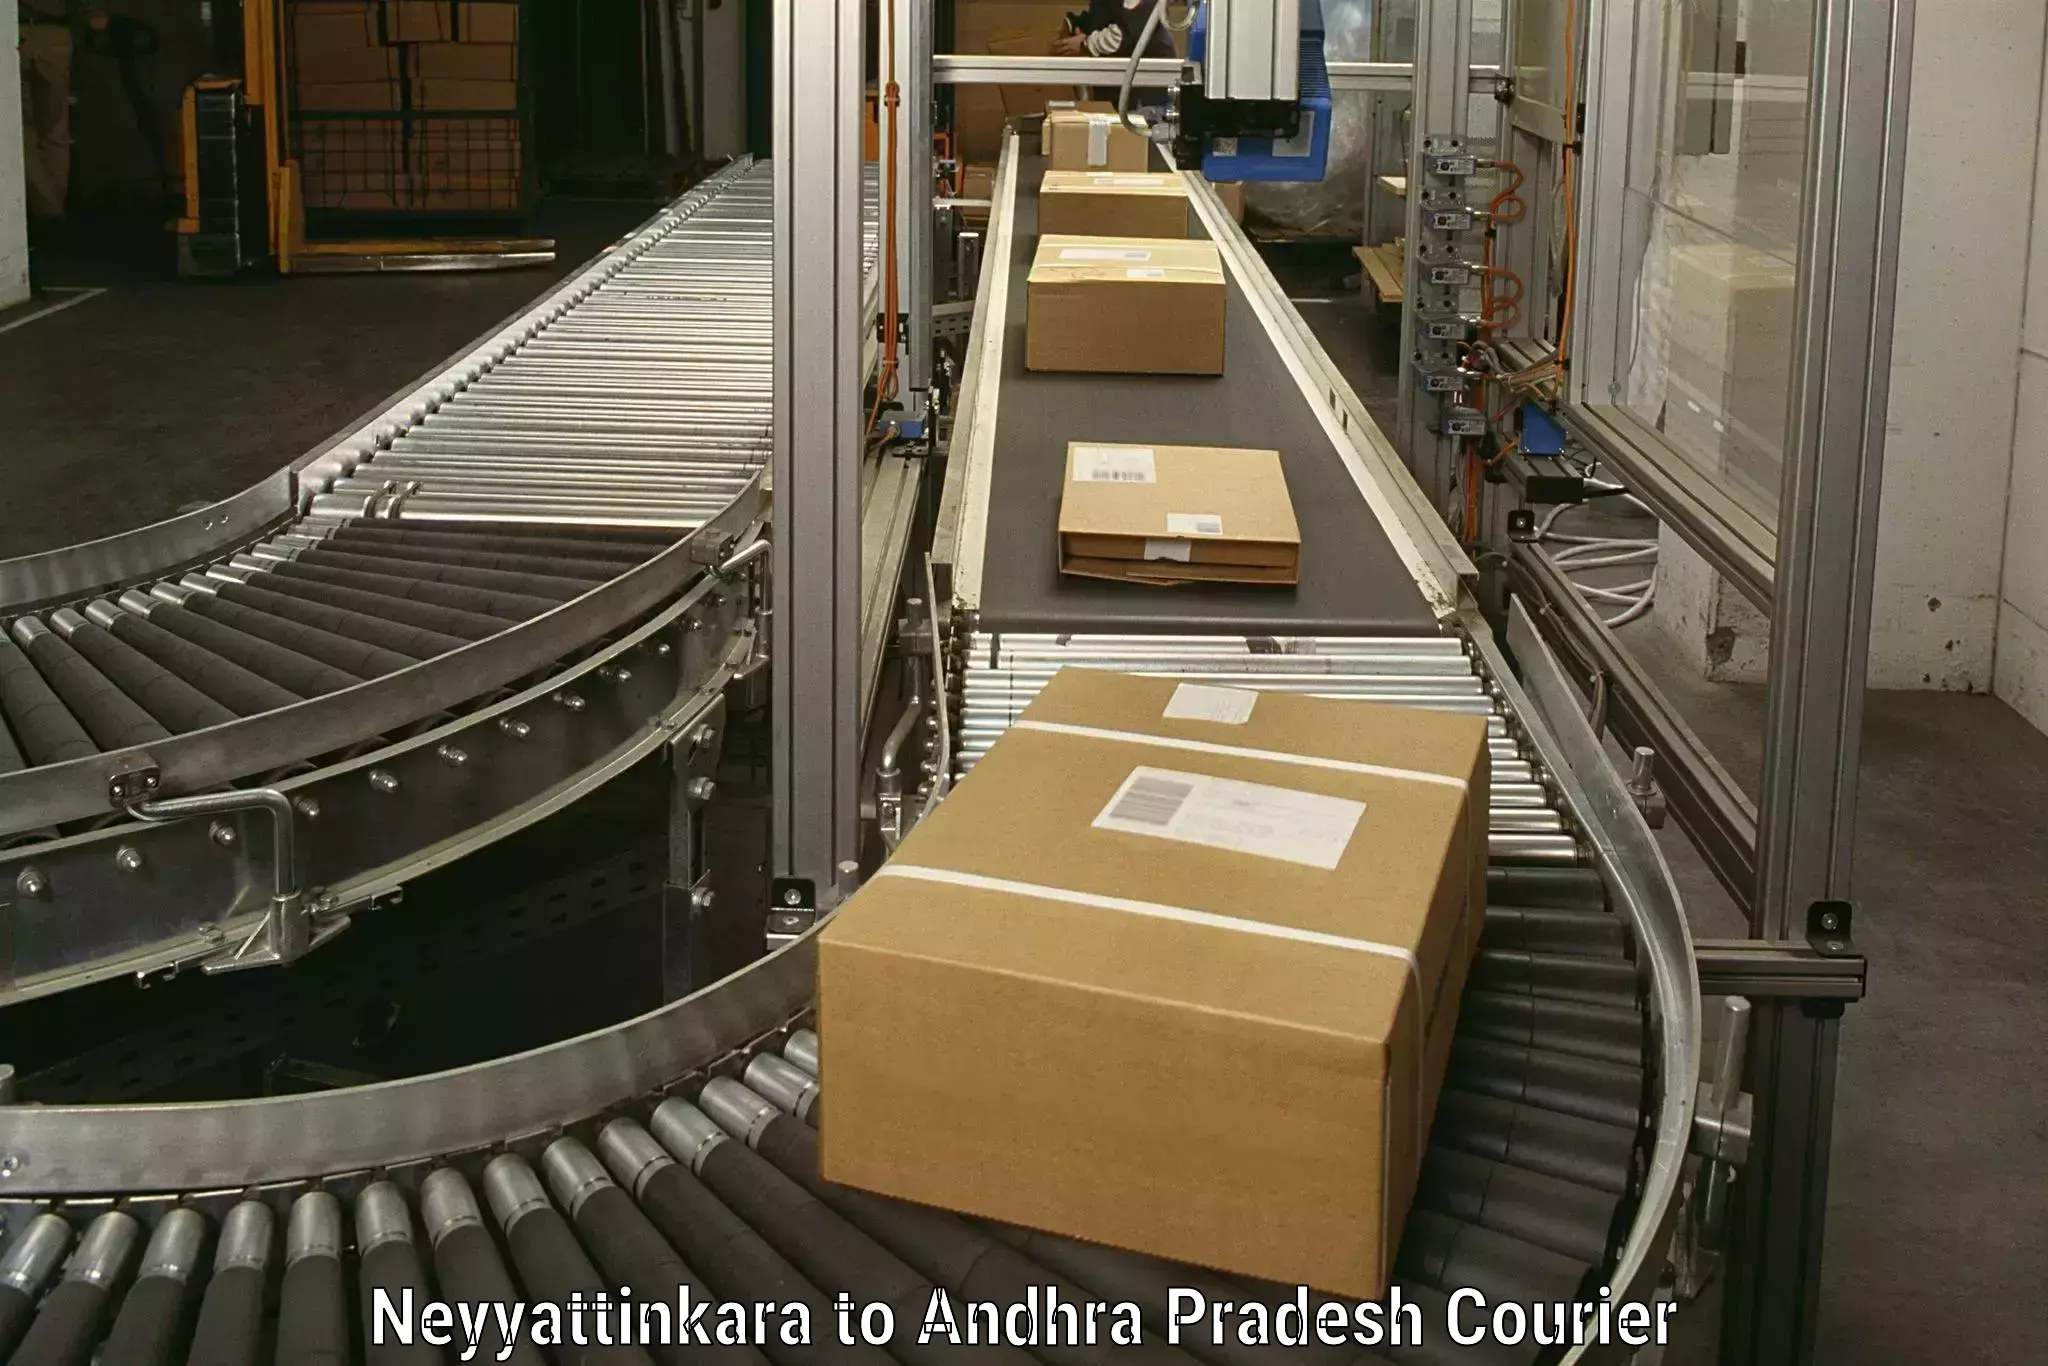 Furniture moving experts Neyyattinkara to Malikipuram